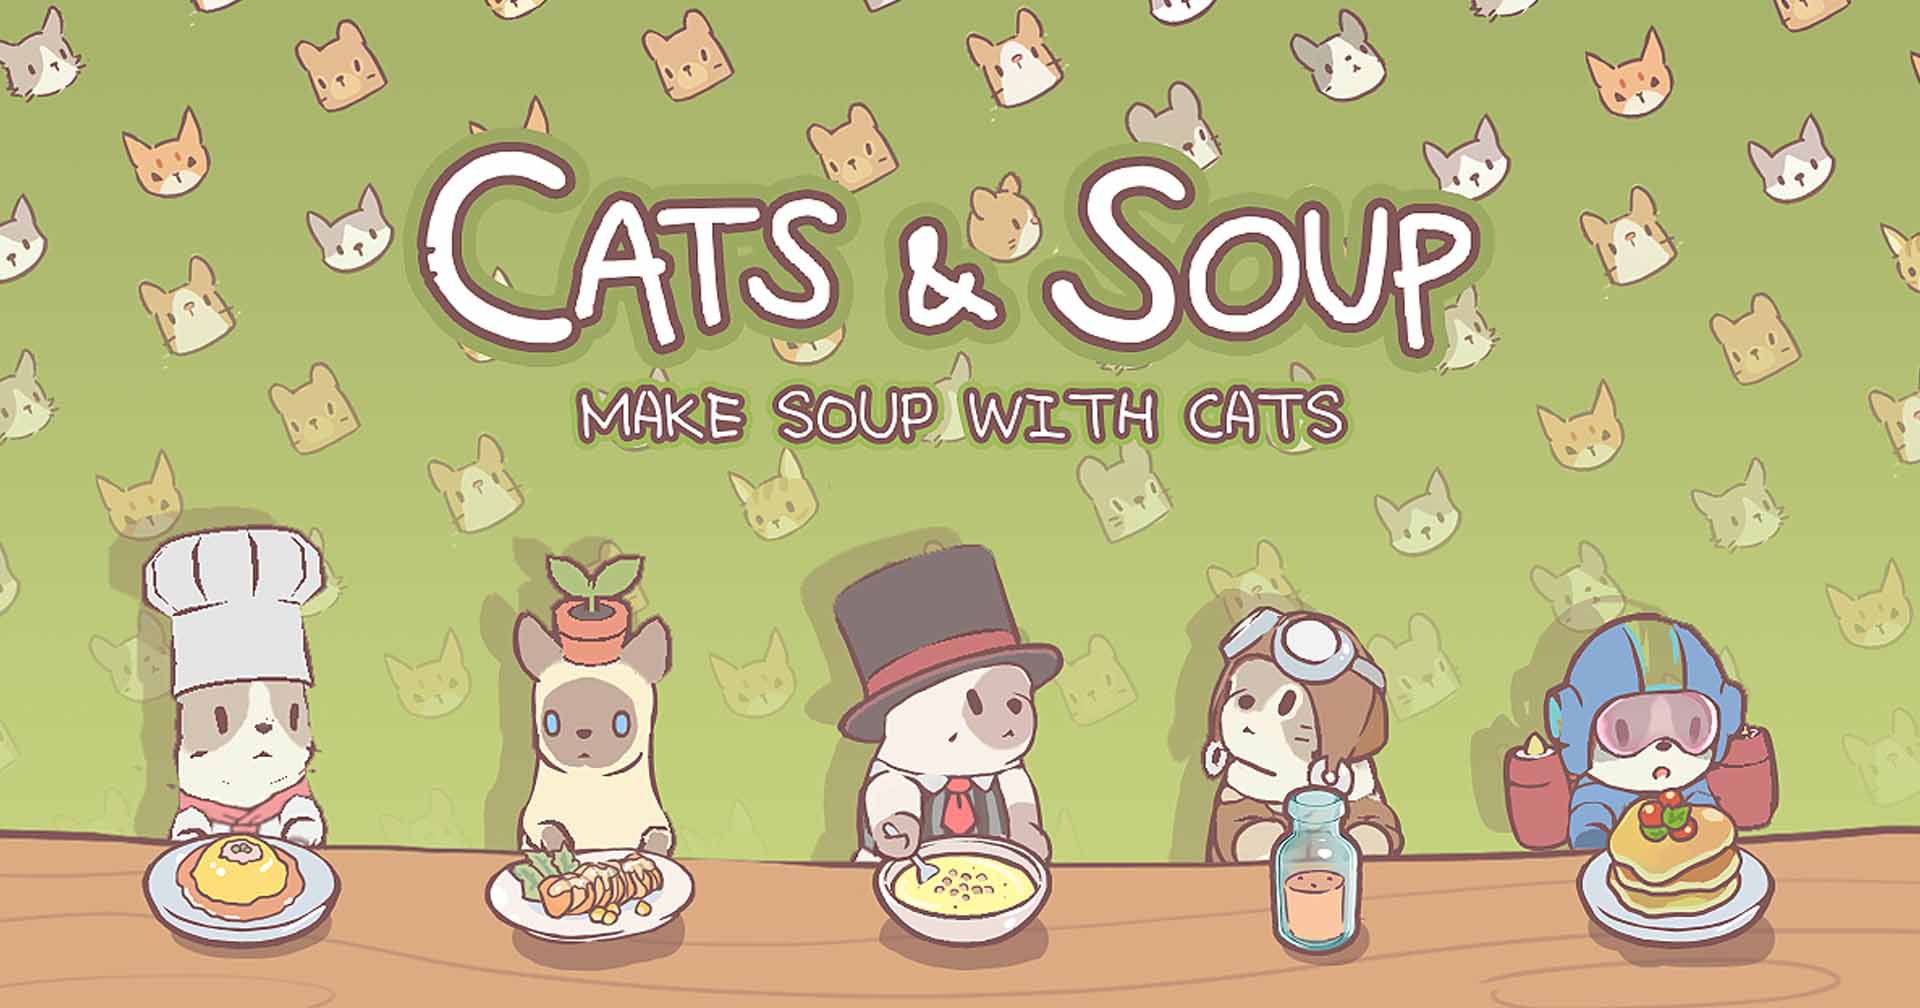 [รีวิวเกม] CATS & SOUP เกมมือถือเลี้ยงแมว ทำซุปขาย ภาพน่ารัก สุดฮีลใจ